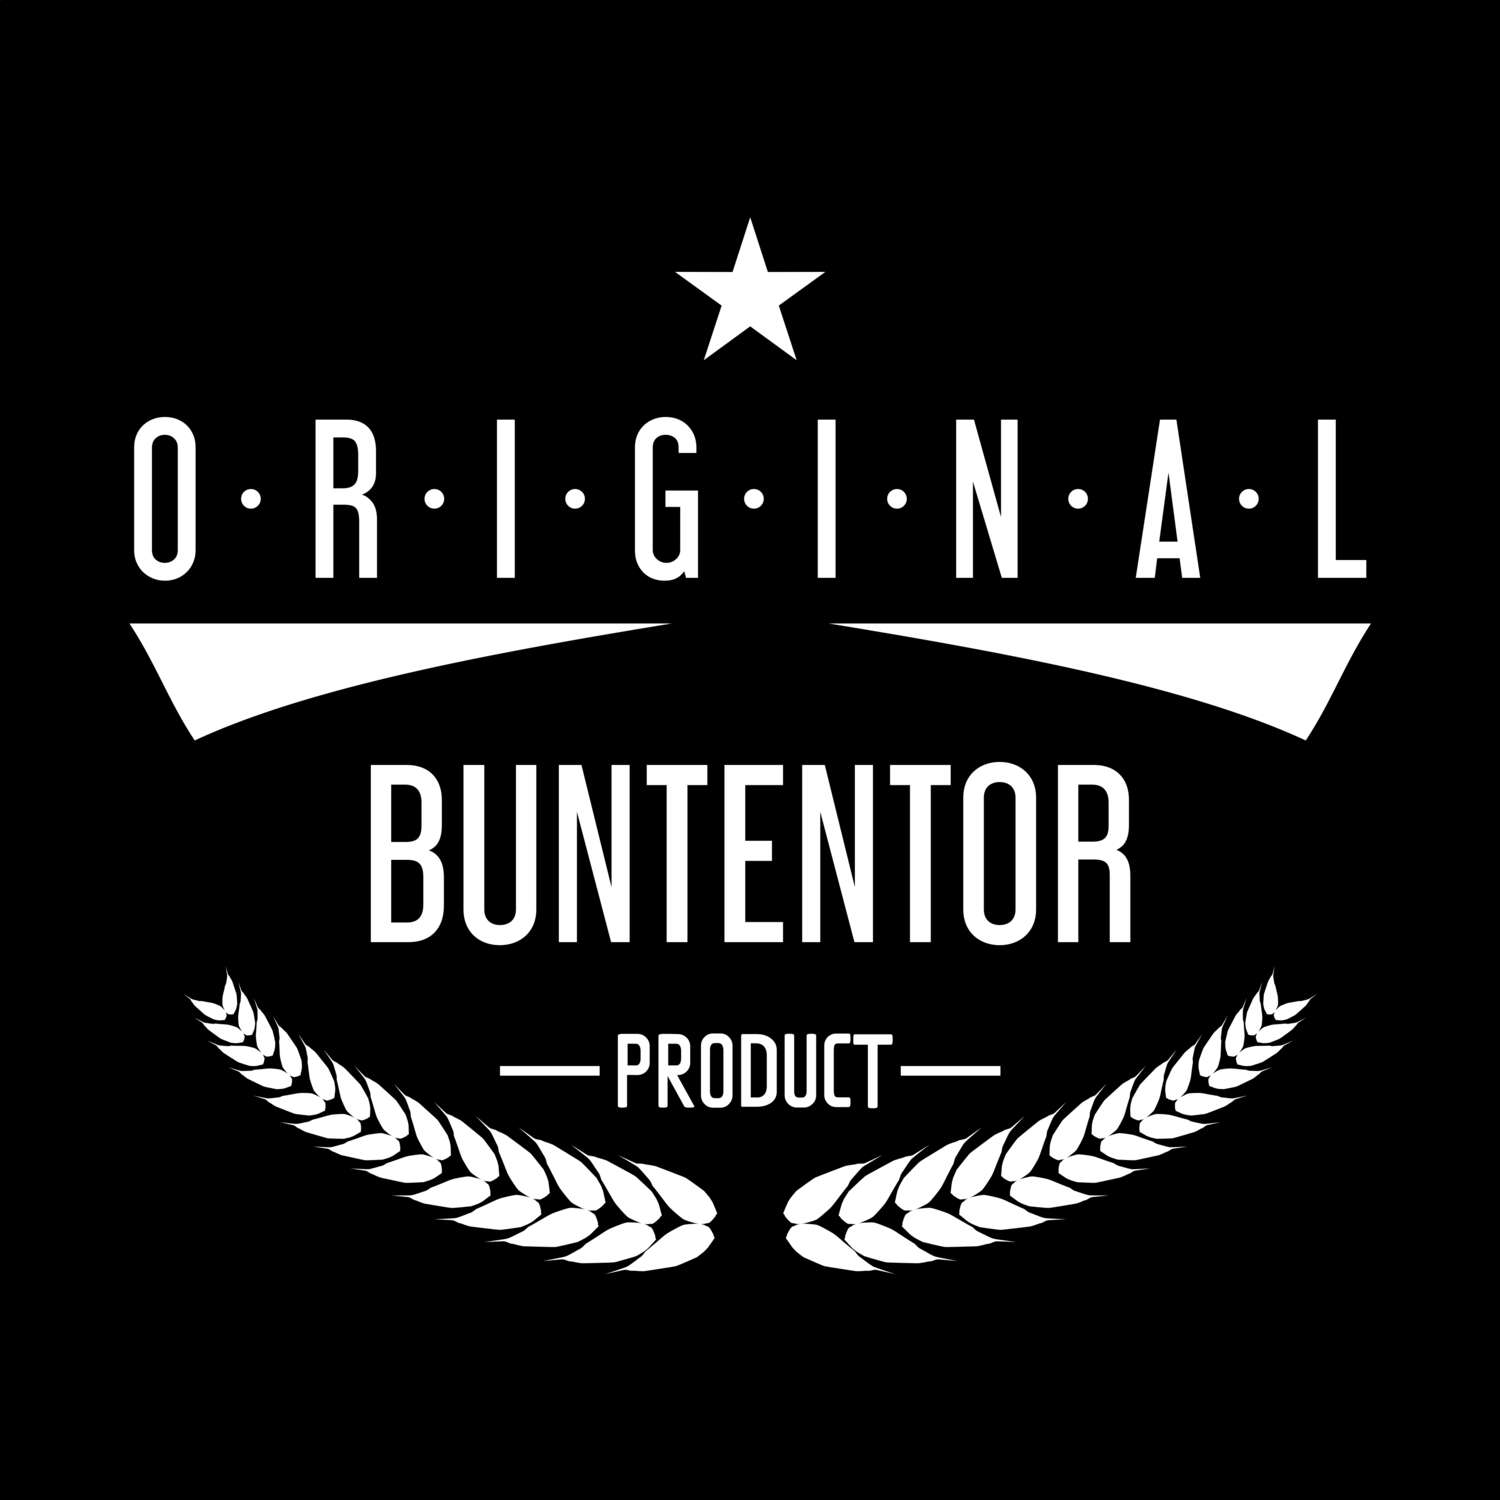 Buntentor T-Shirt »Original Product«